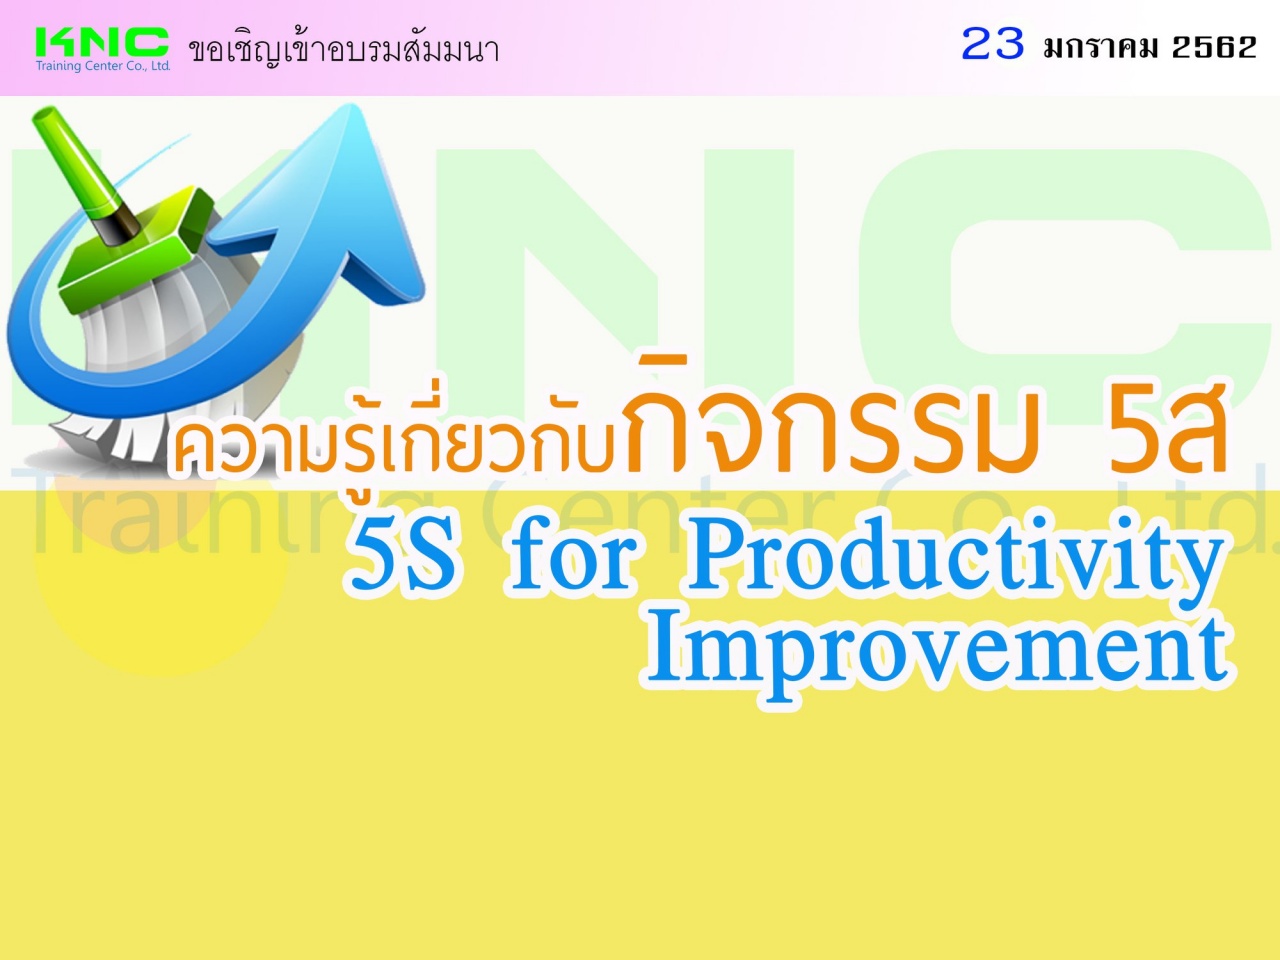 ความรู้เกี่ยวกับกิจกรรม 5ส (5S for Productivity Improvement)